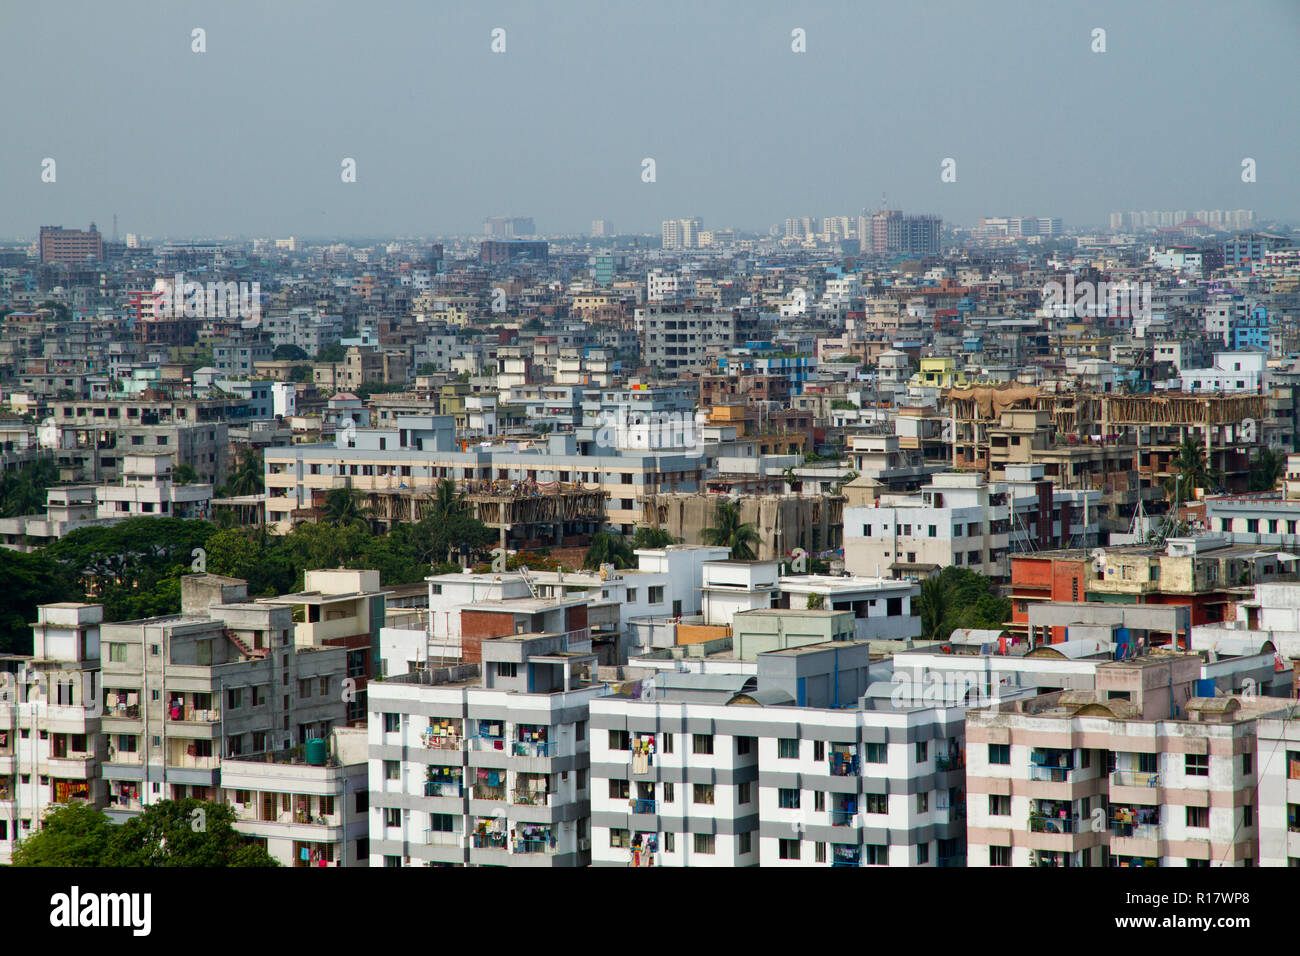 Vue aérienne de la ville de Dhaka. Dhaka, Bangladesh. Banque D'Images